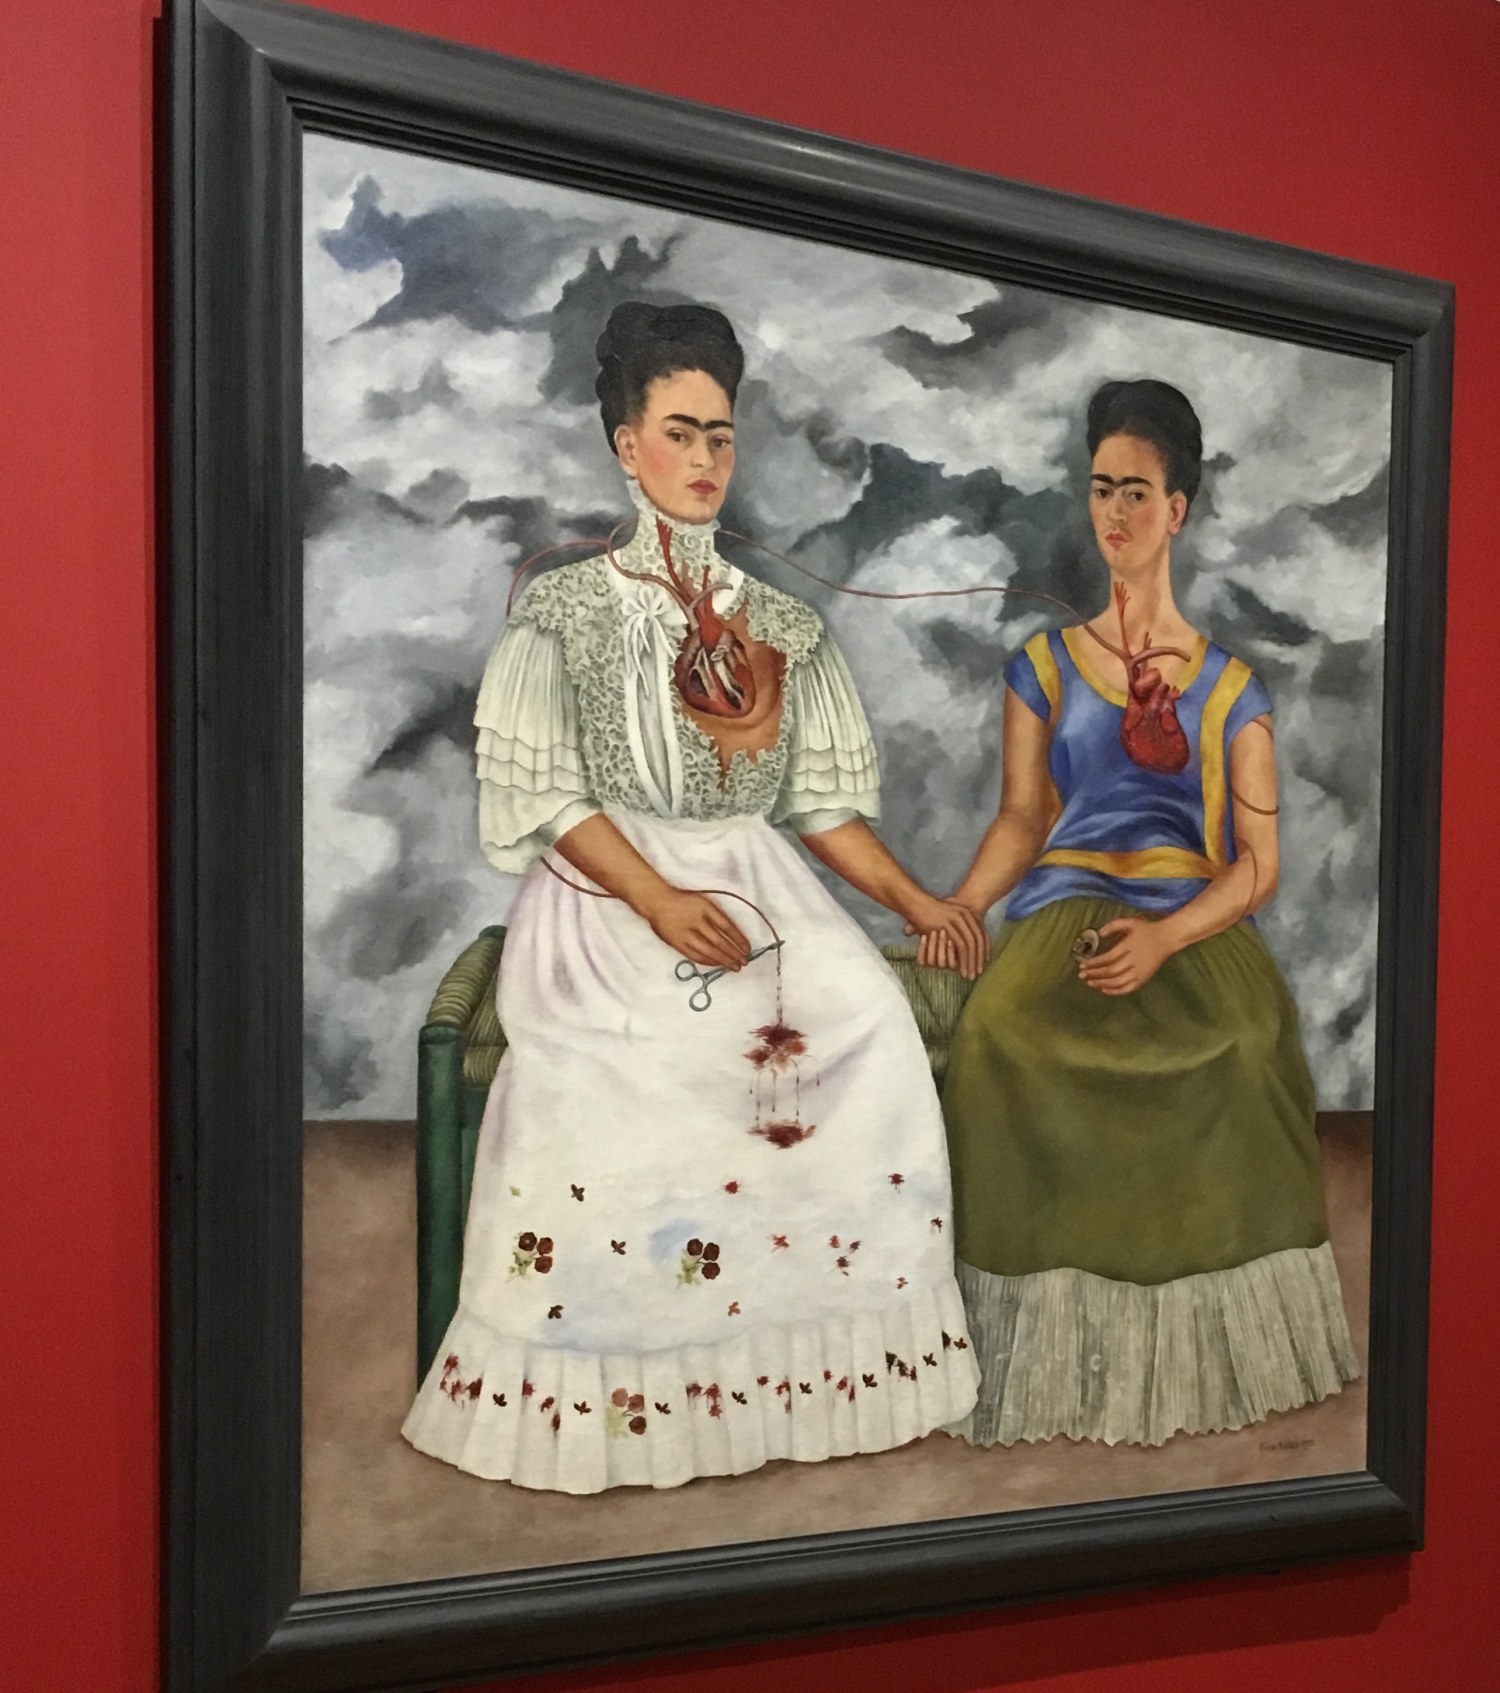 Frida Kahlo Masterpieces of Art